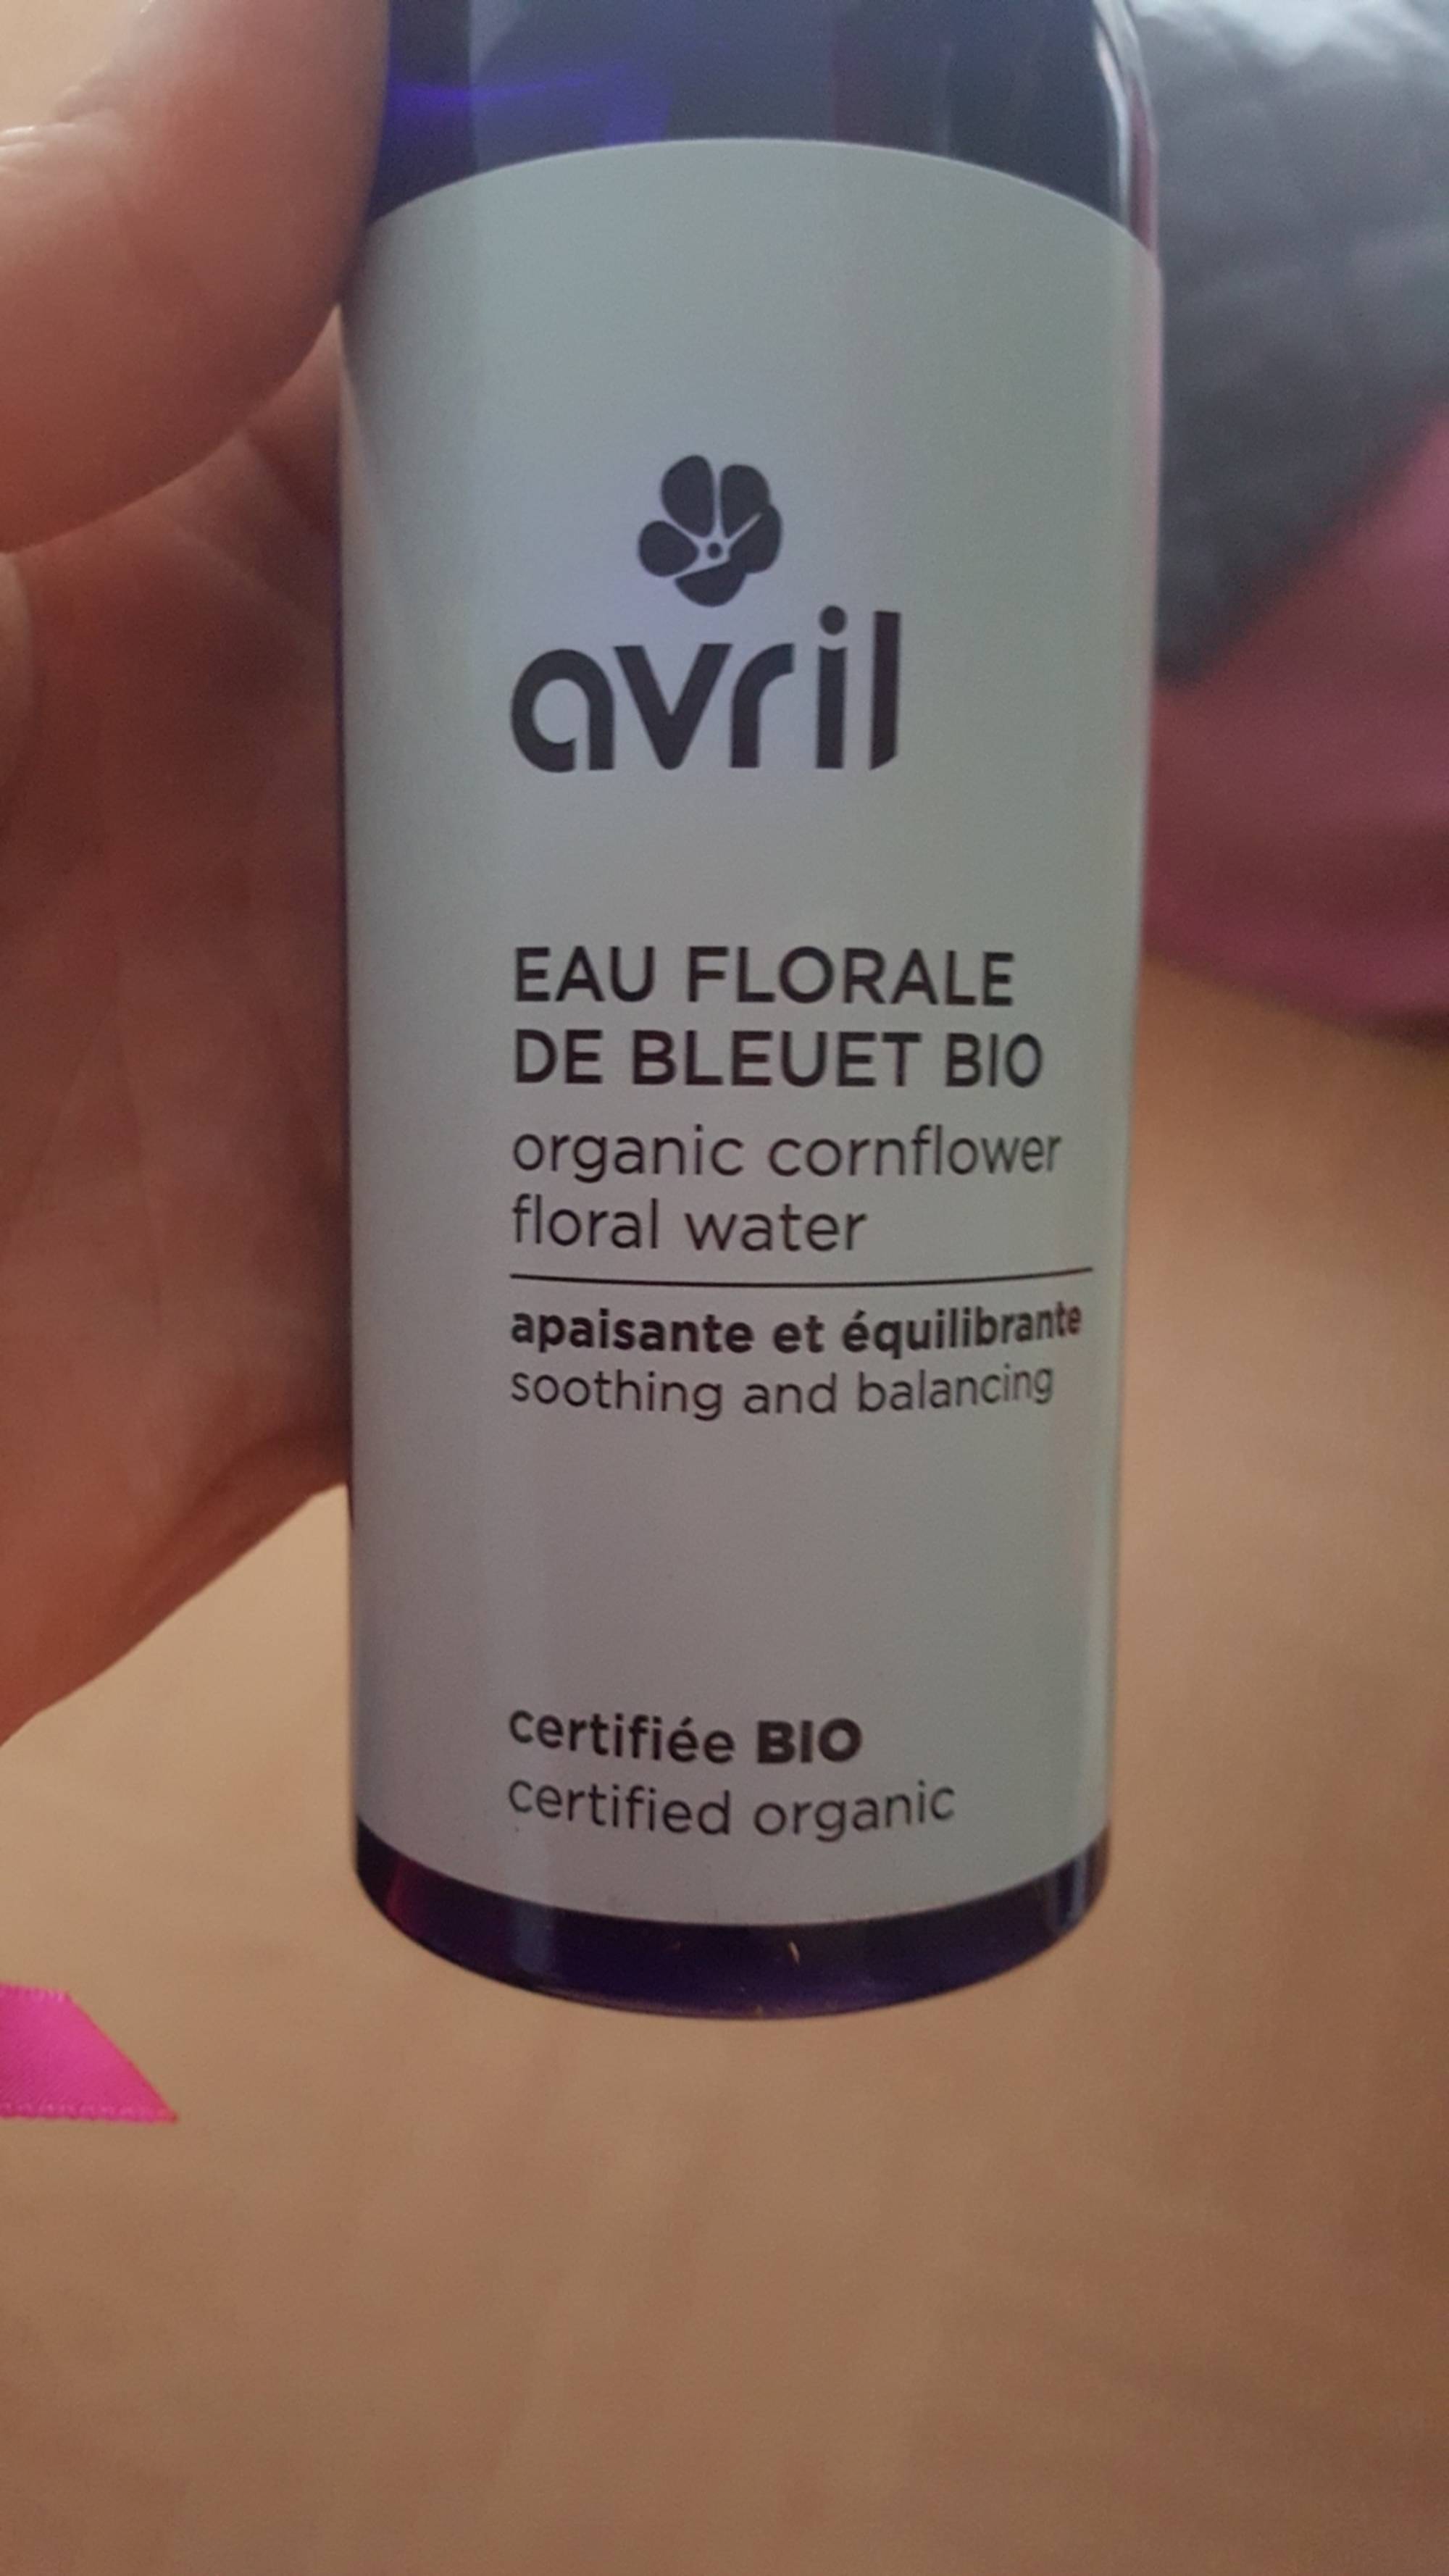 AVRIL - Eau florale de bleuet bio